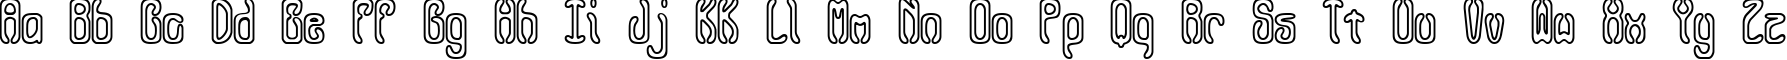 Пример написания английского алфавита шрифтом Queasy Outline BRK